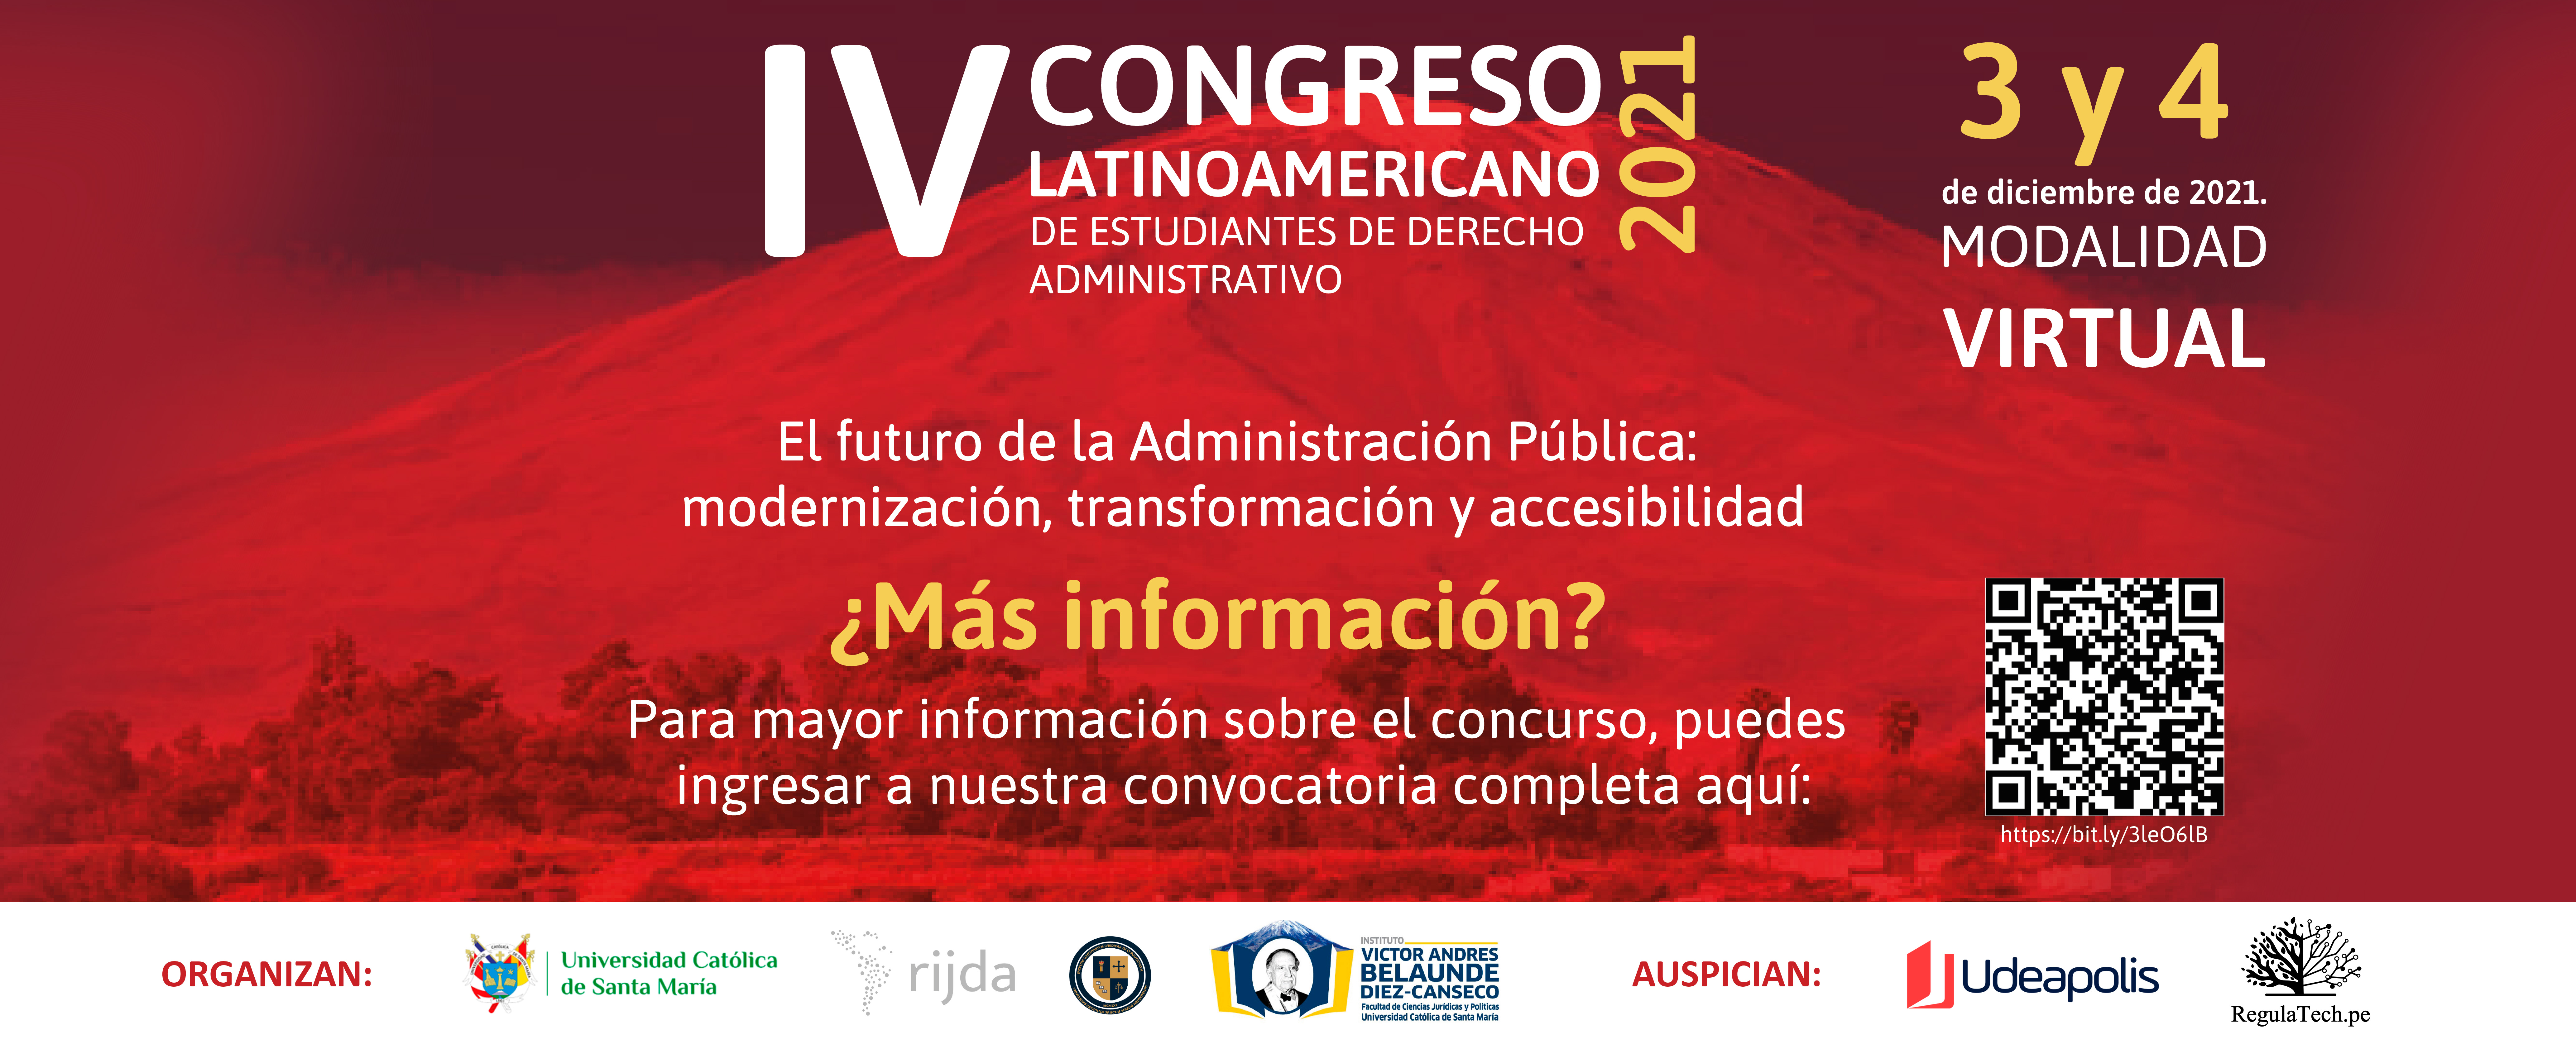 iv-congreso-latinoamericano